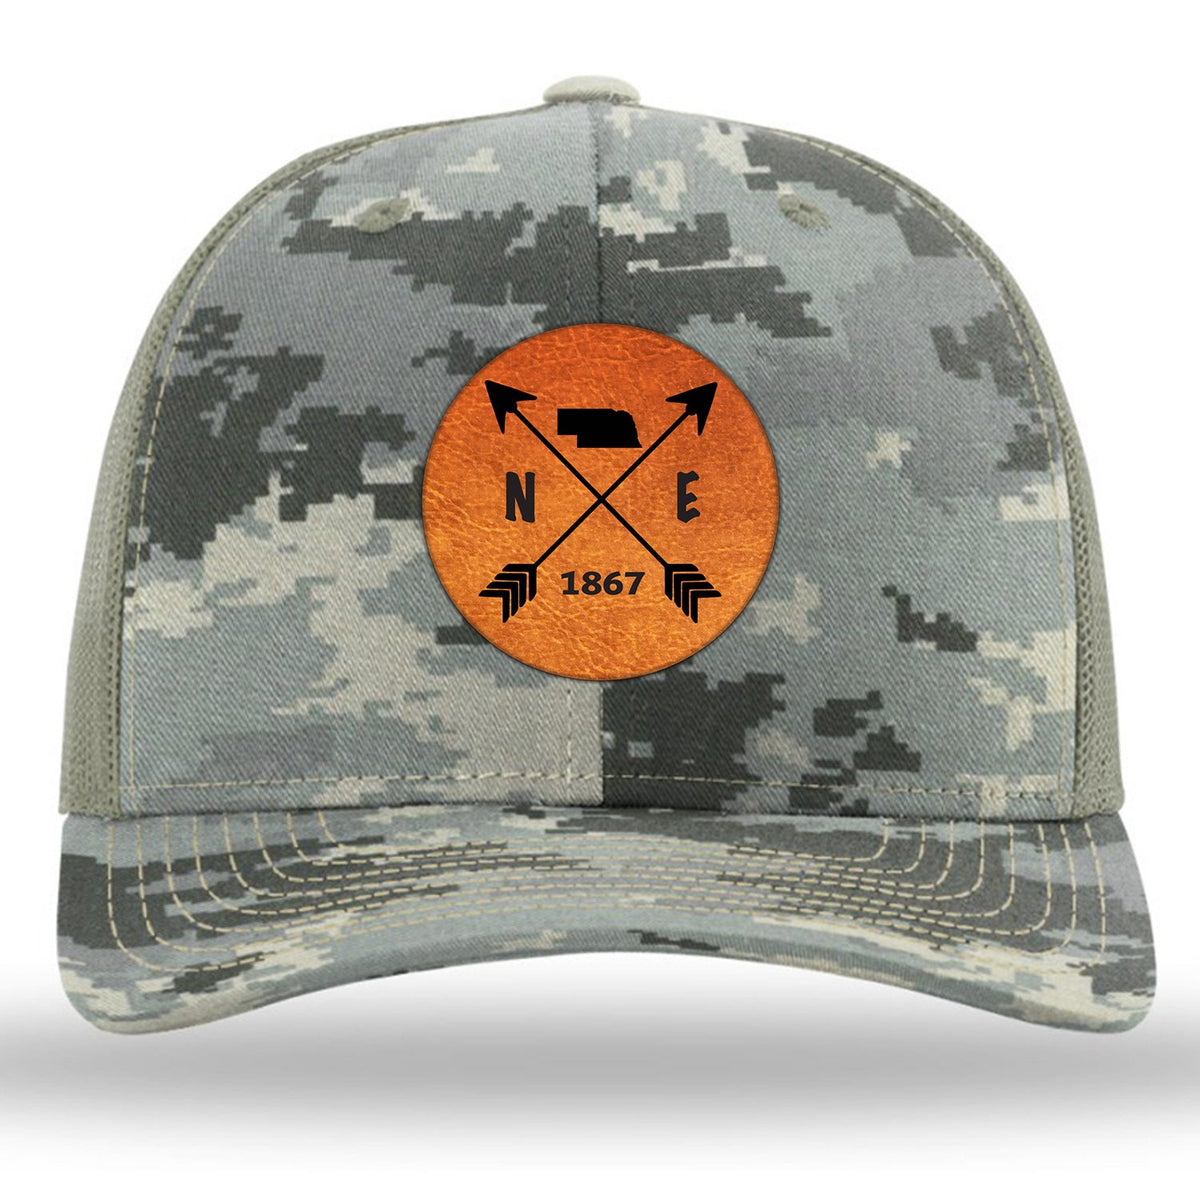 Nebraska State Arrows - Leather Patch Trucker Hat